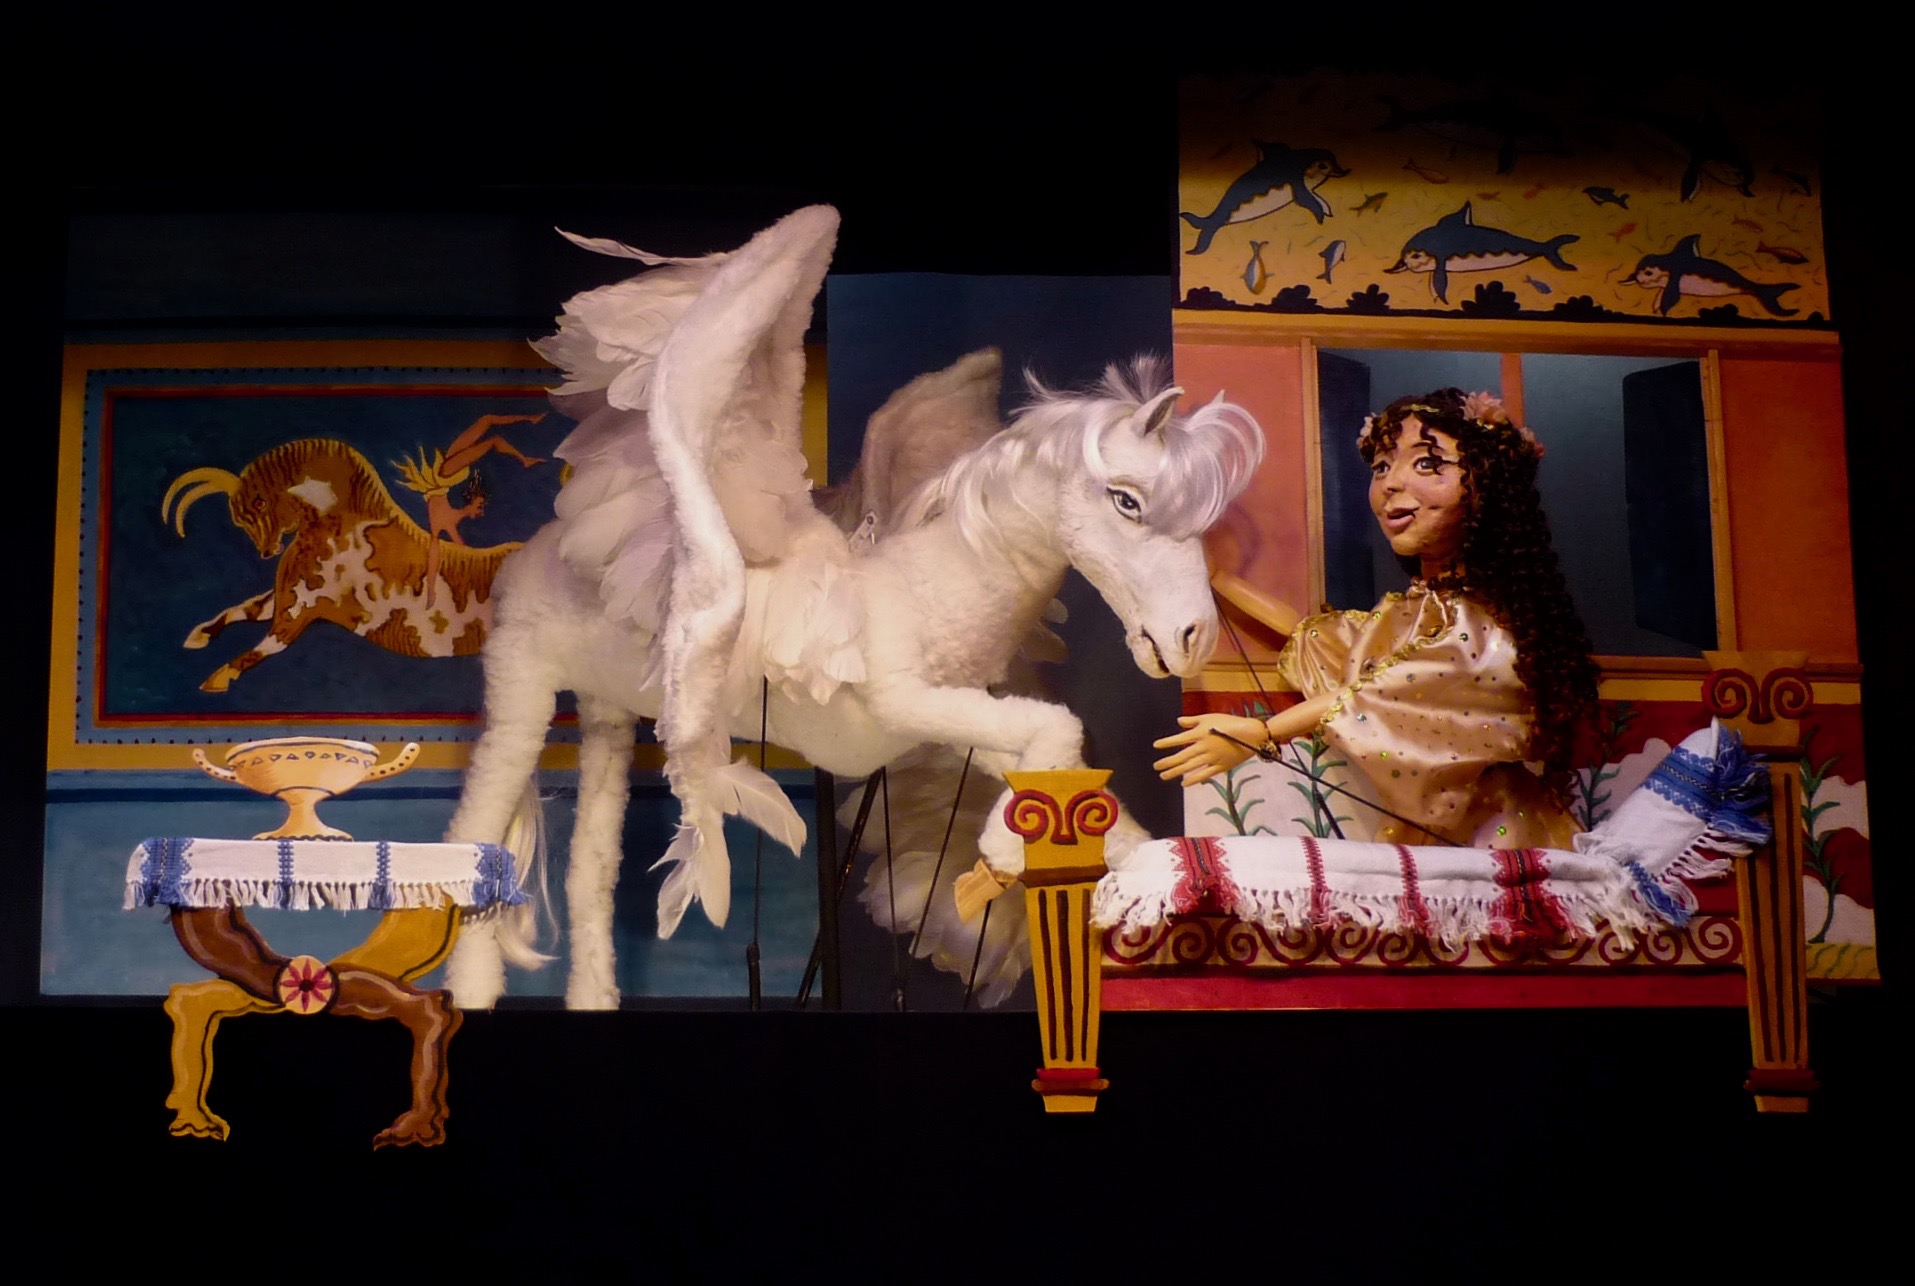 Ariadne en het vliegende paard